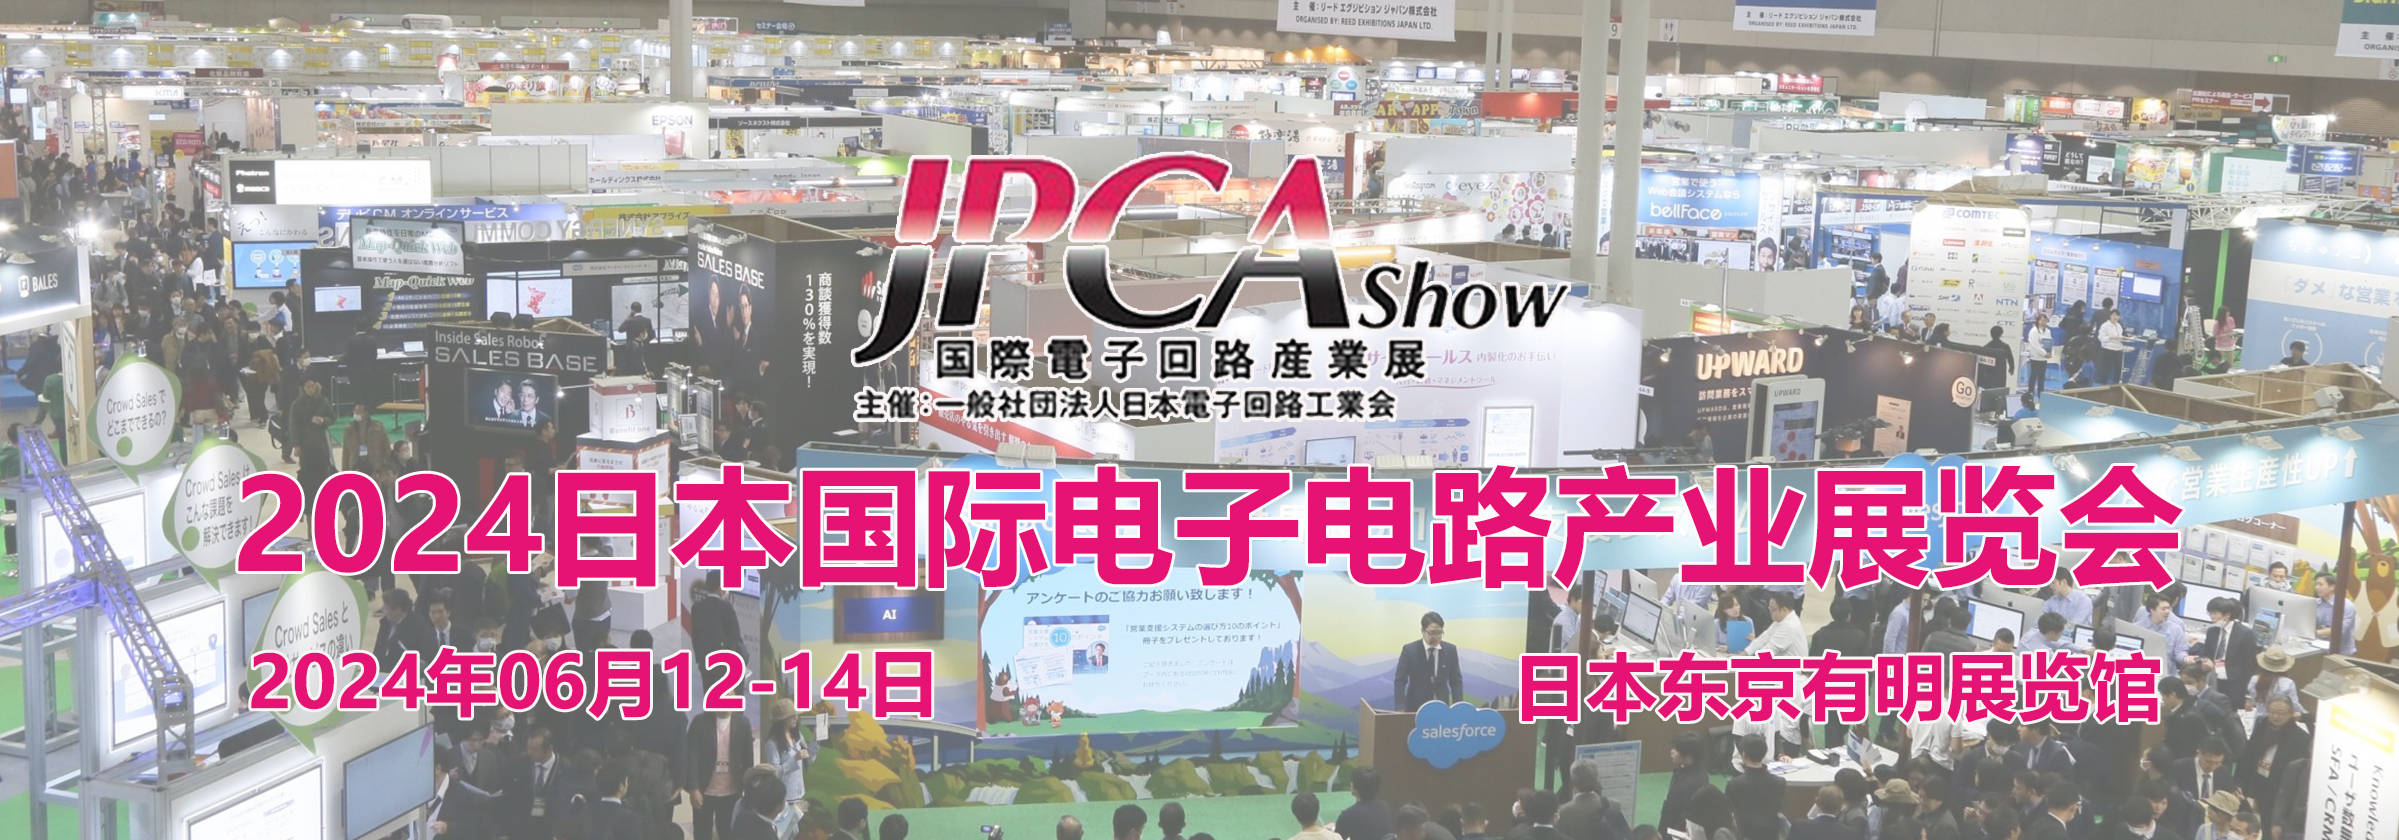 IM电竞 电子竞技平台2024日本东京国际电子电路产业展览会 JPCA SHOW(图1)